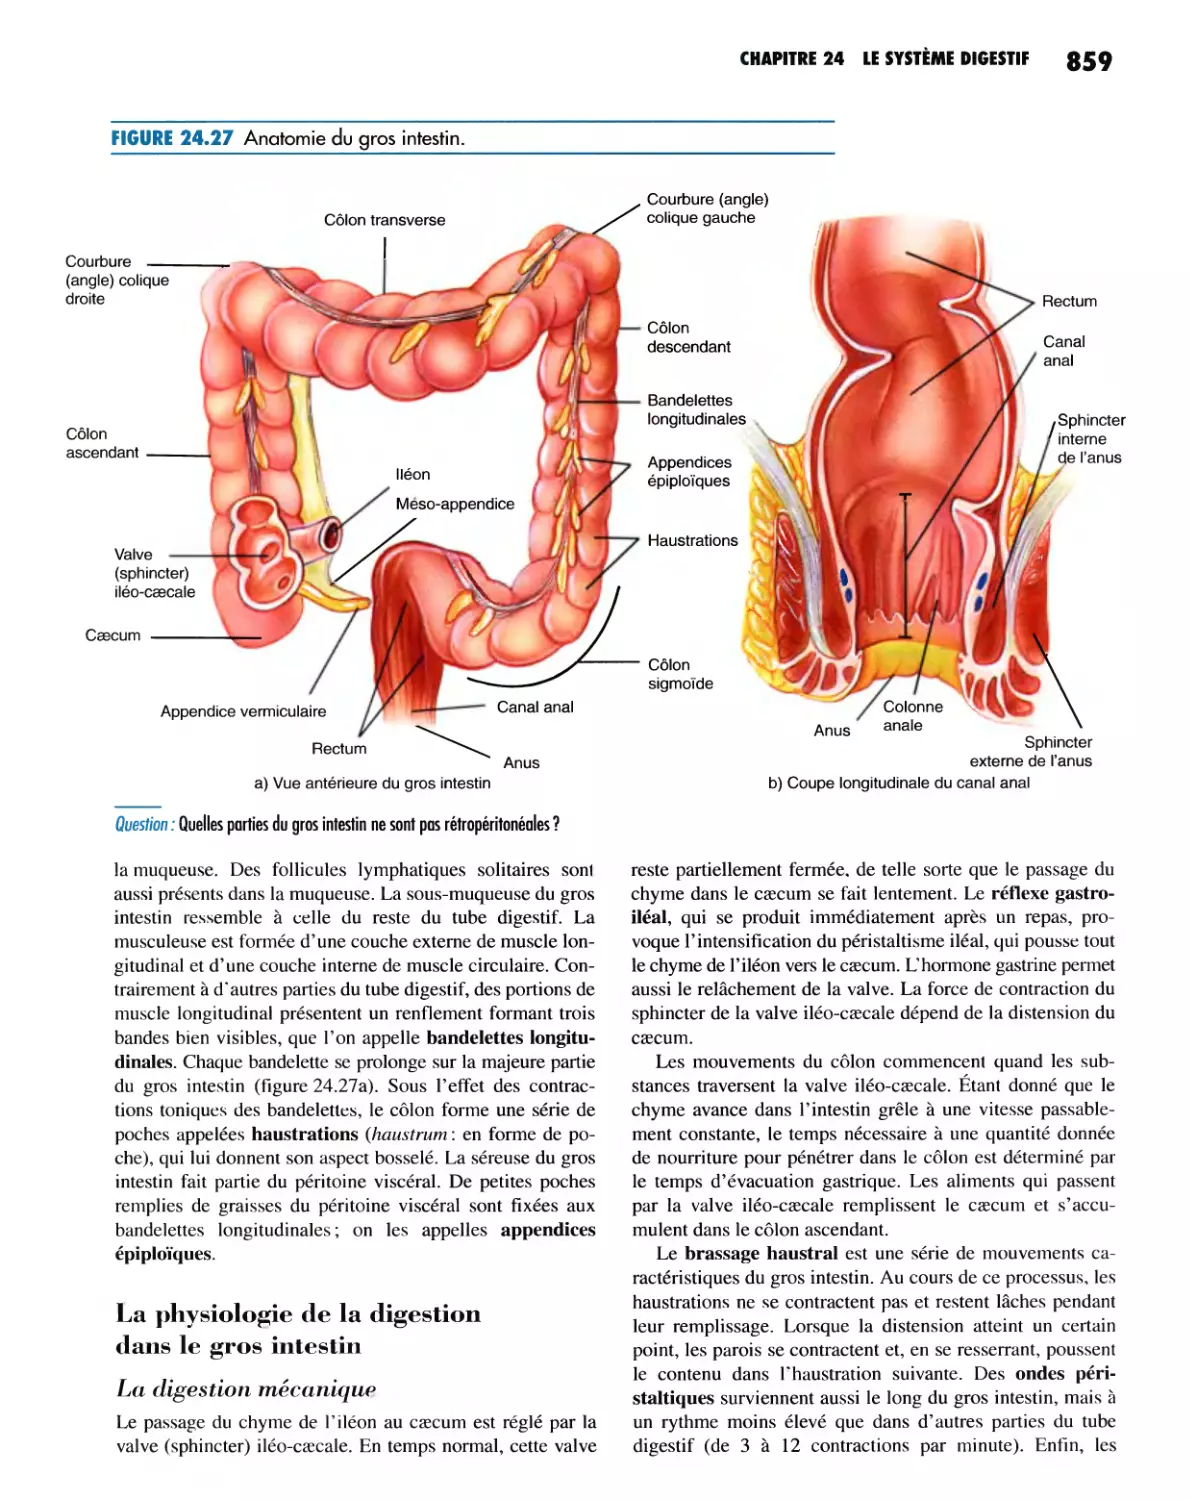 La physiologie de la digestion dans le gros intestin